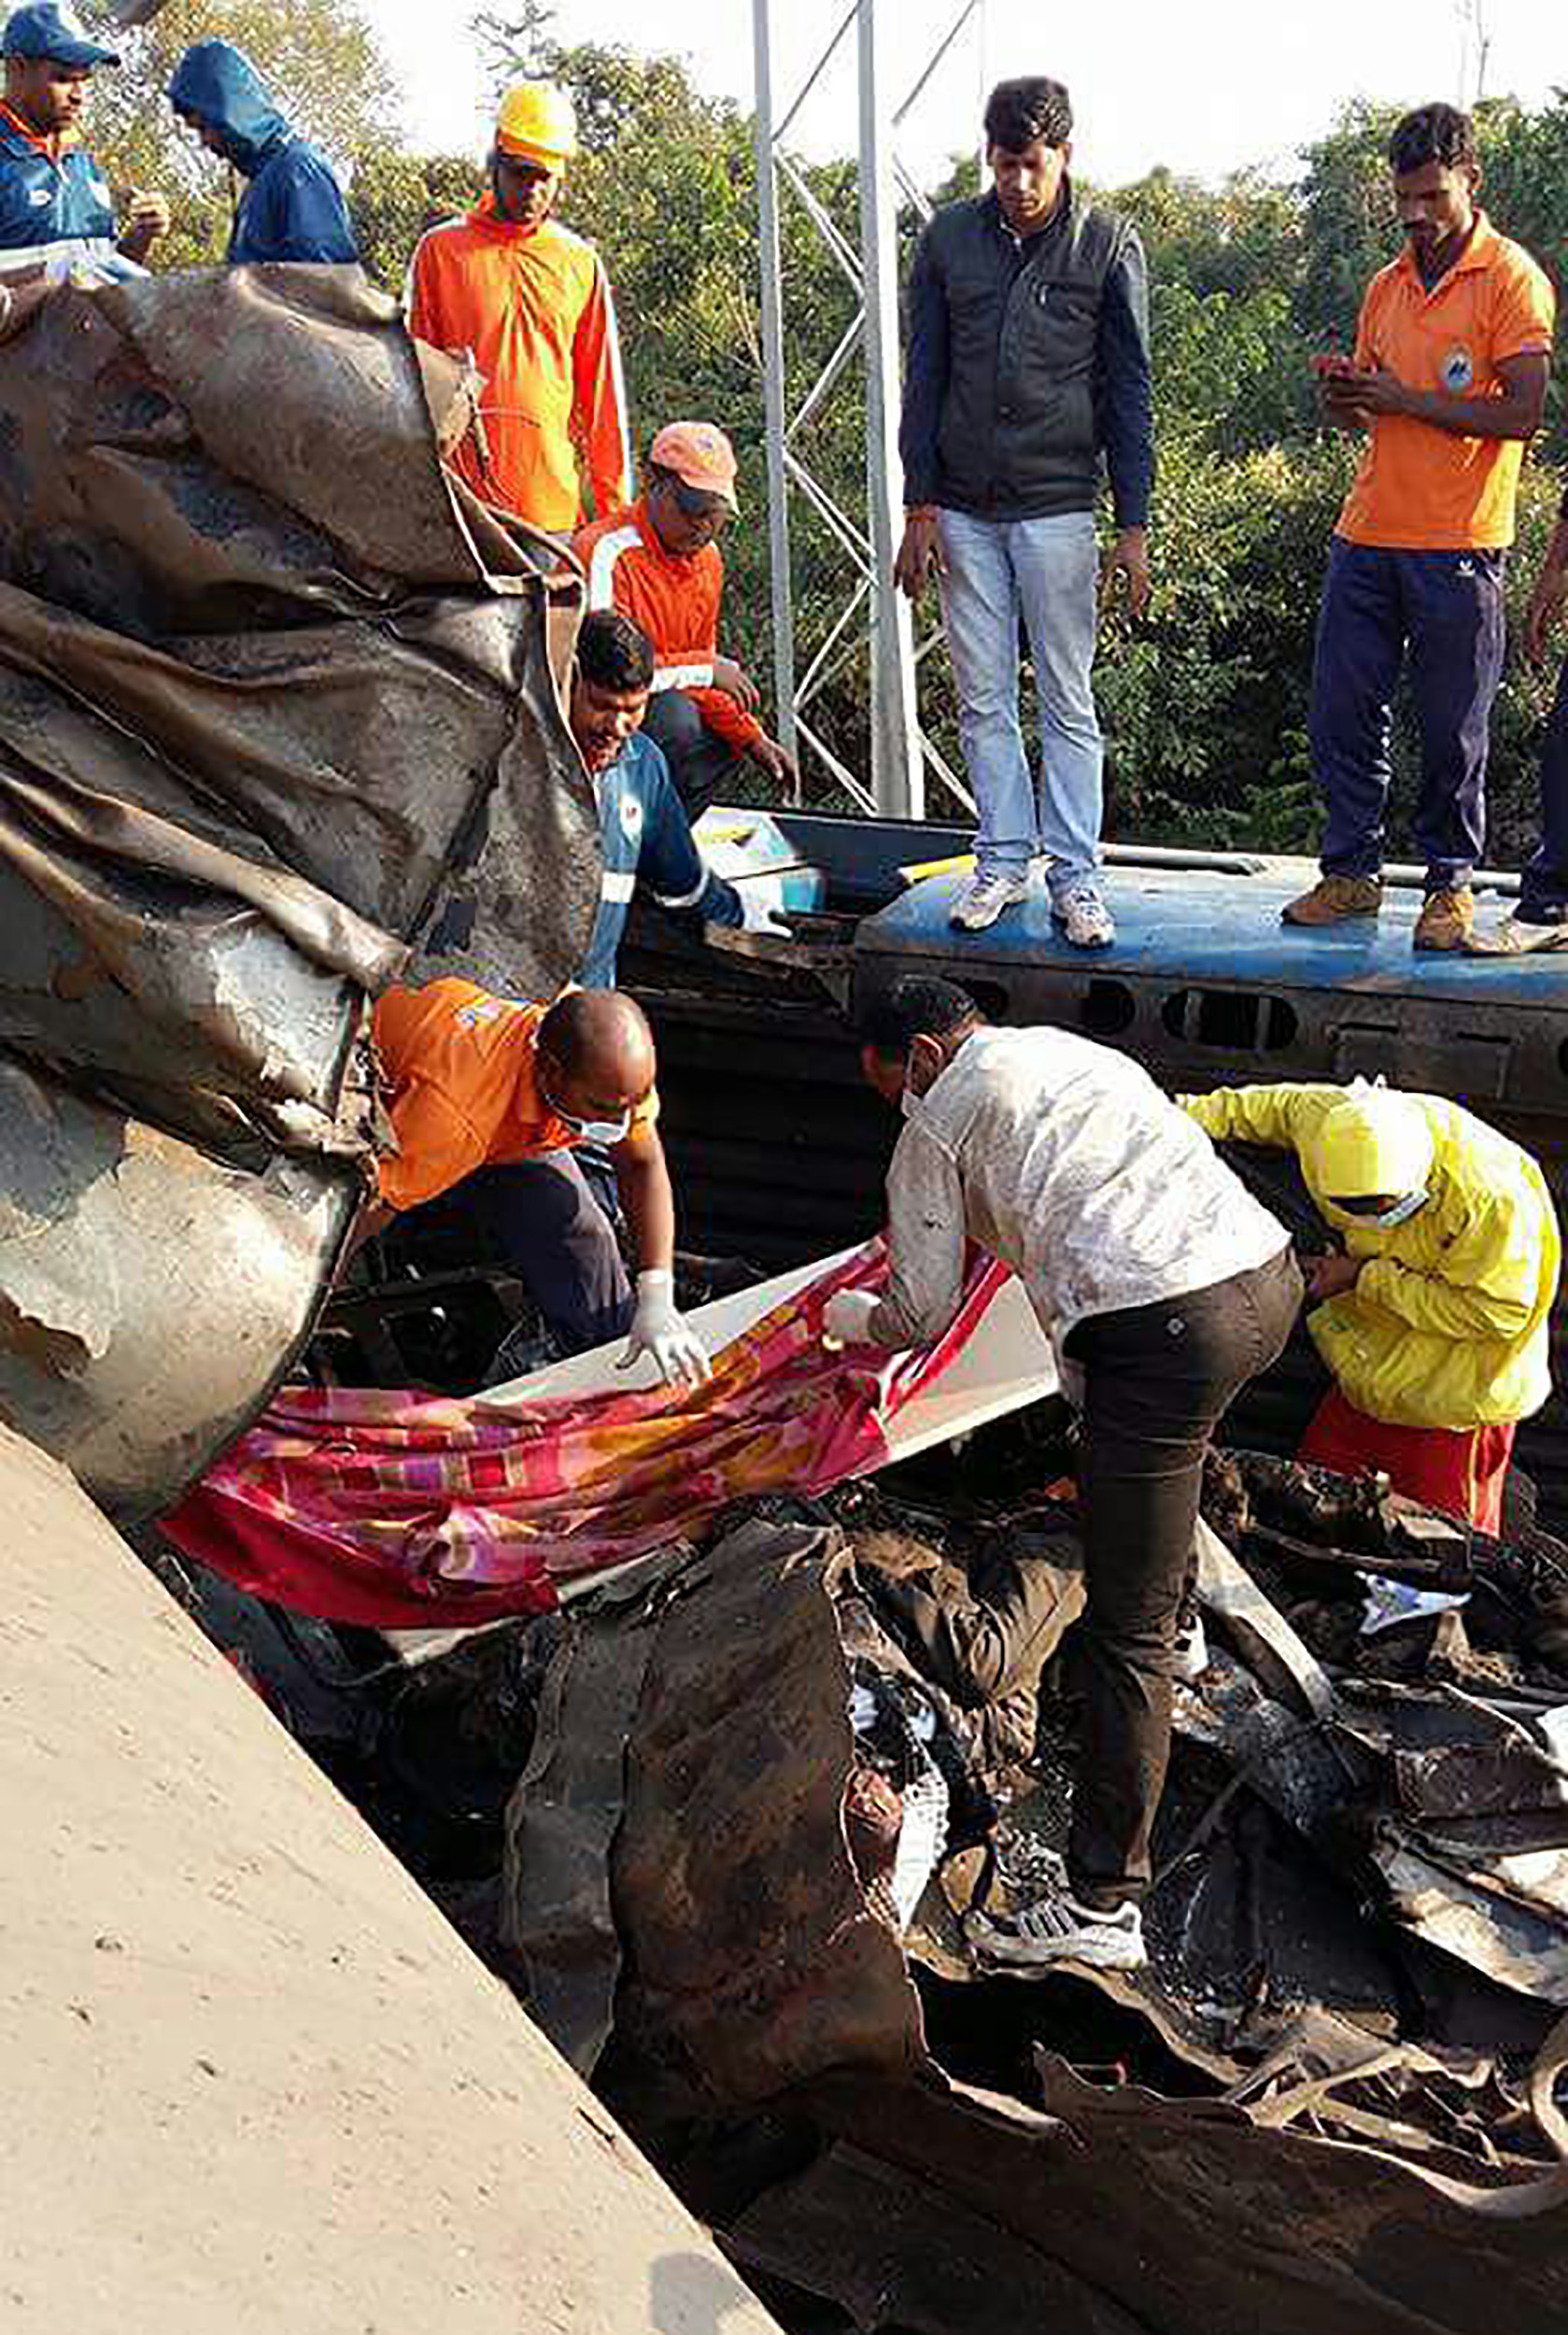 عمال الإنقاذ فى الهند يبحثون عن ضحايا أسفل القطار -- أ ف ب